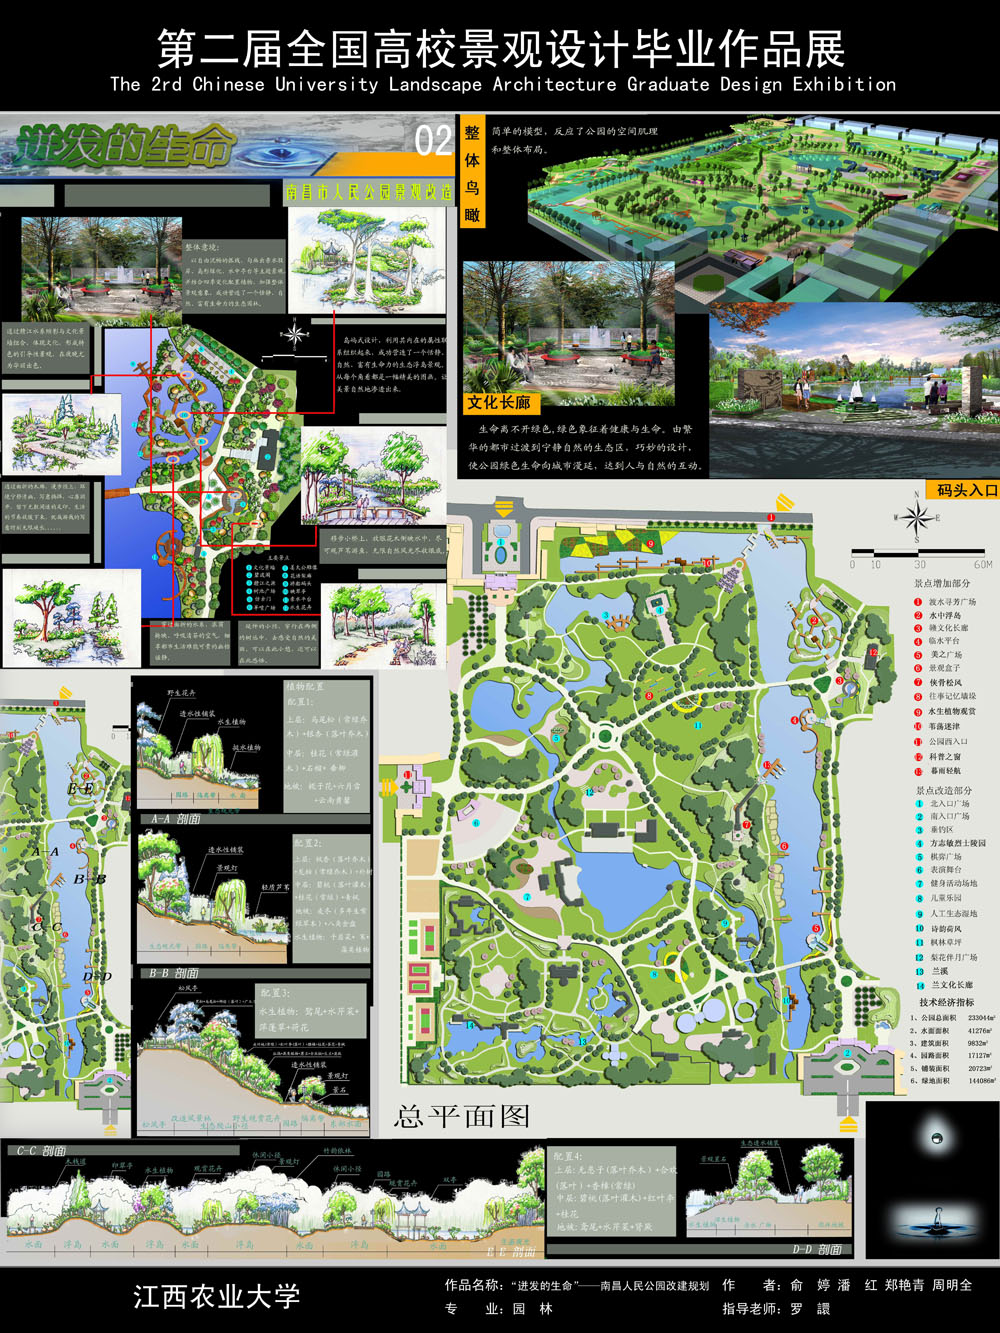 迸发的生命——南昌市人民公园景观改造-2